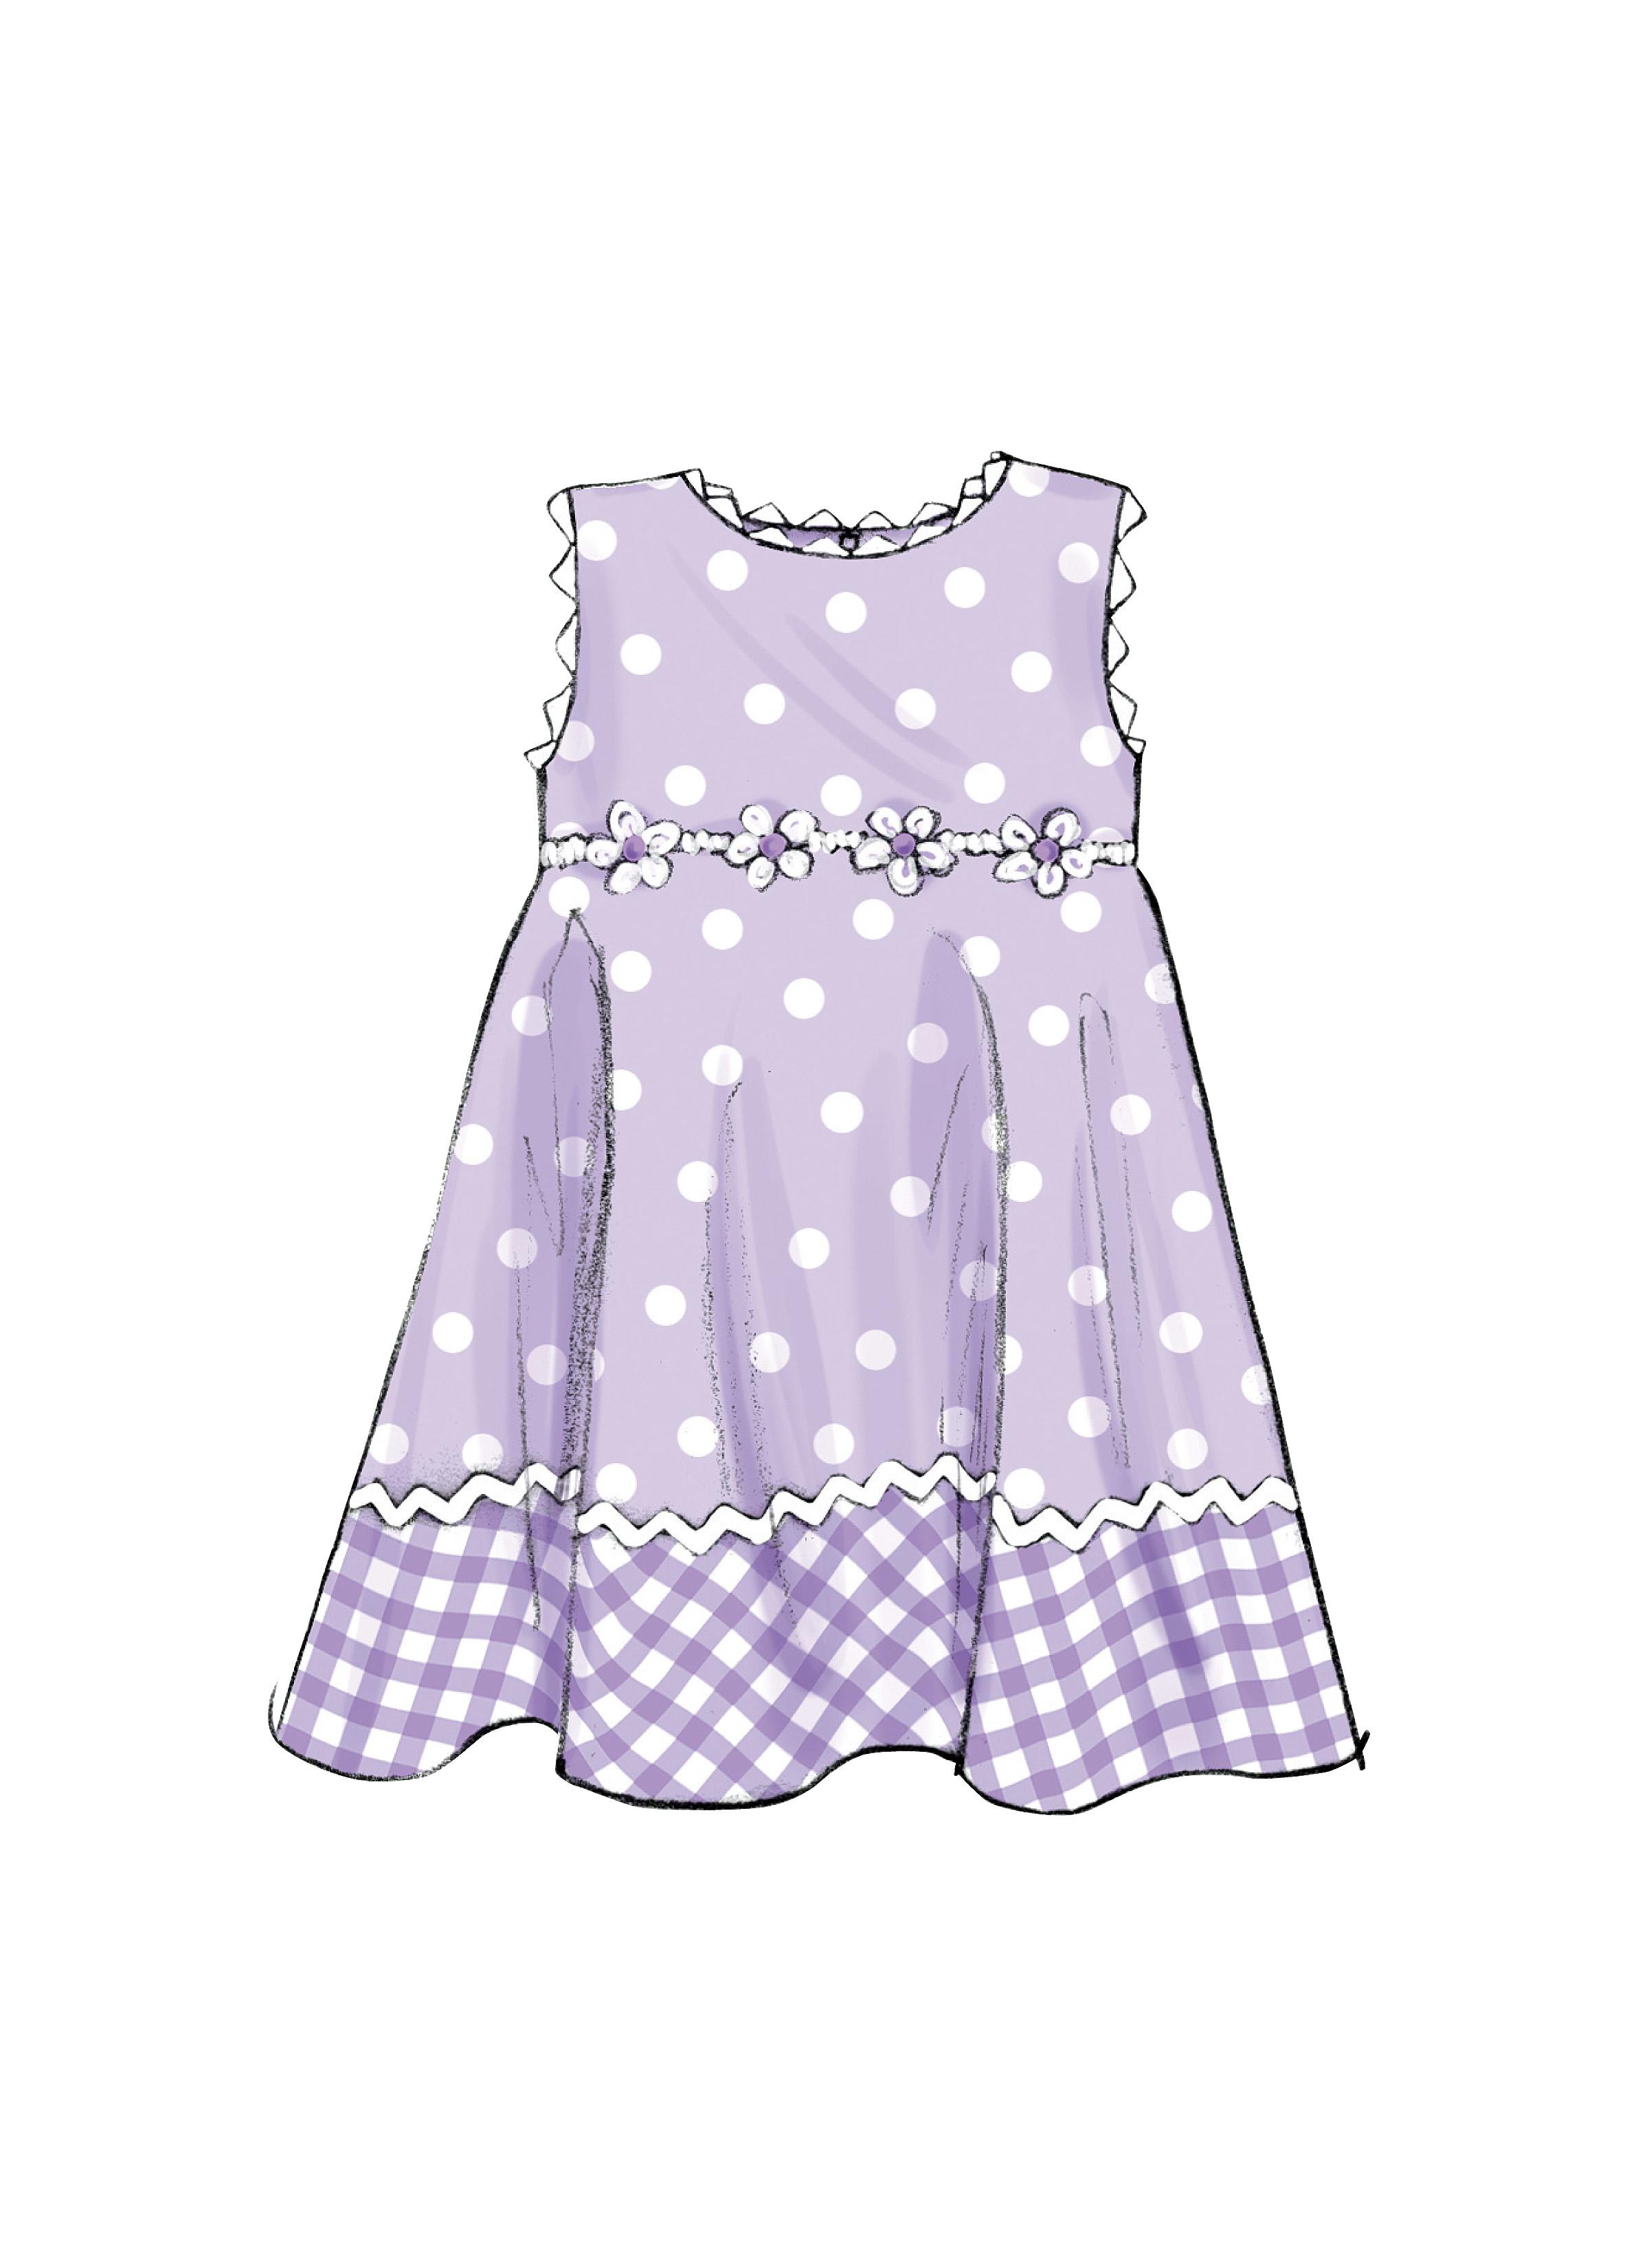 Butterick B4443 Misses'/Misses' Petite Dress